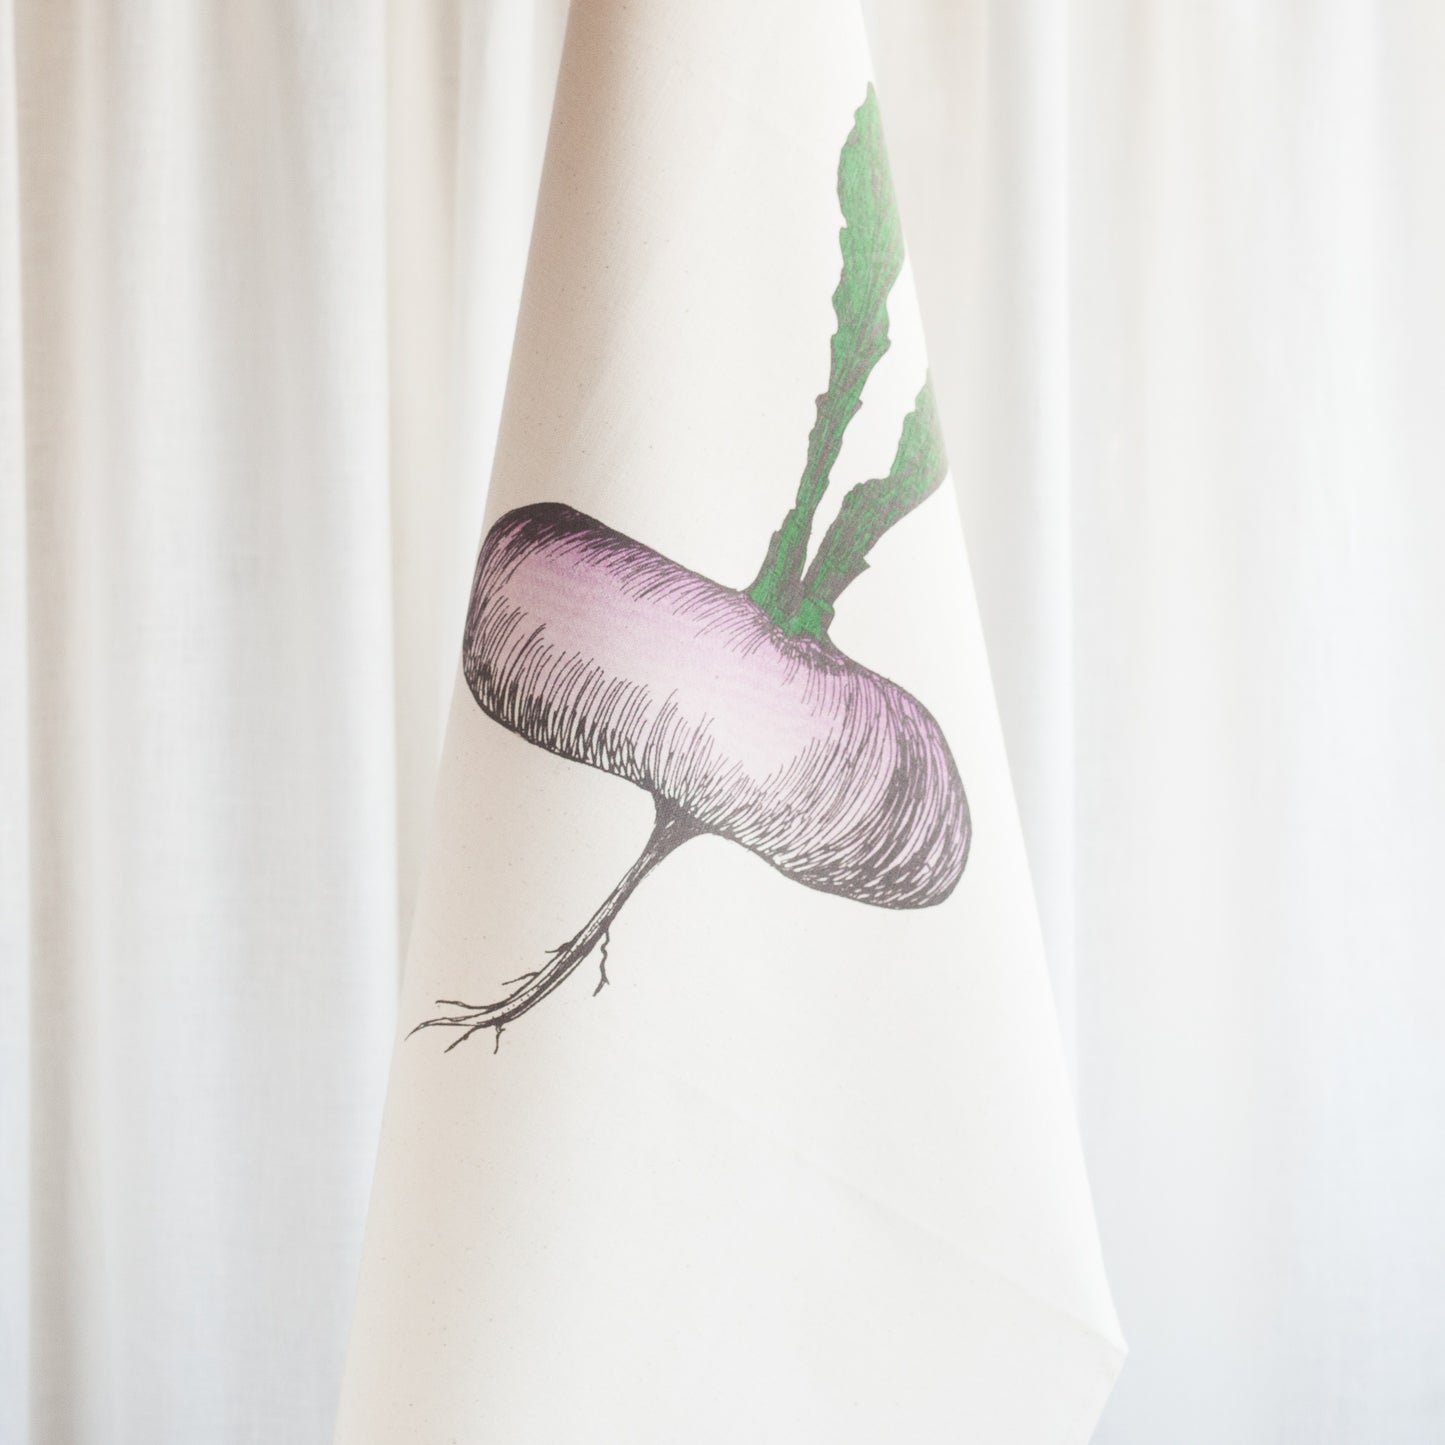 Purple Turnip Tea Towel